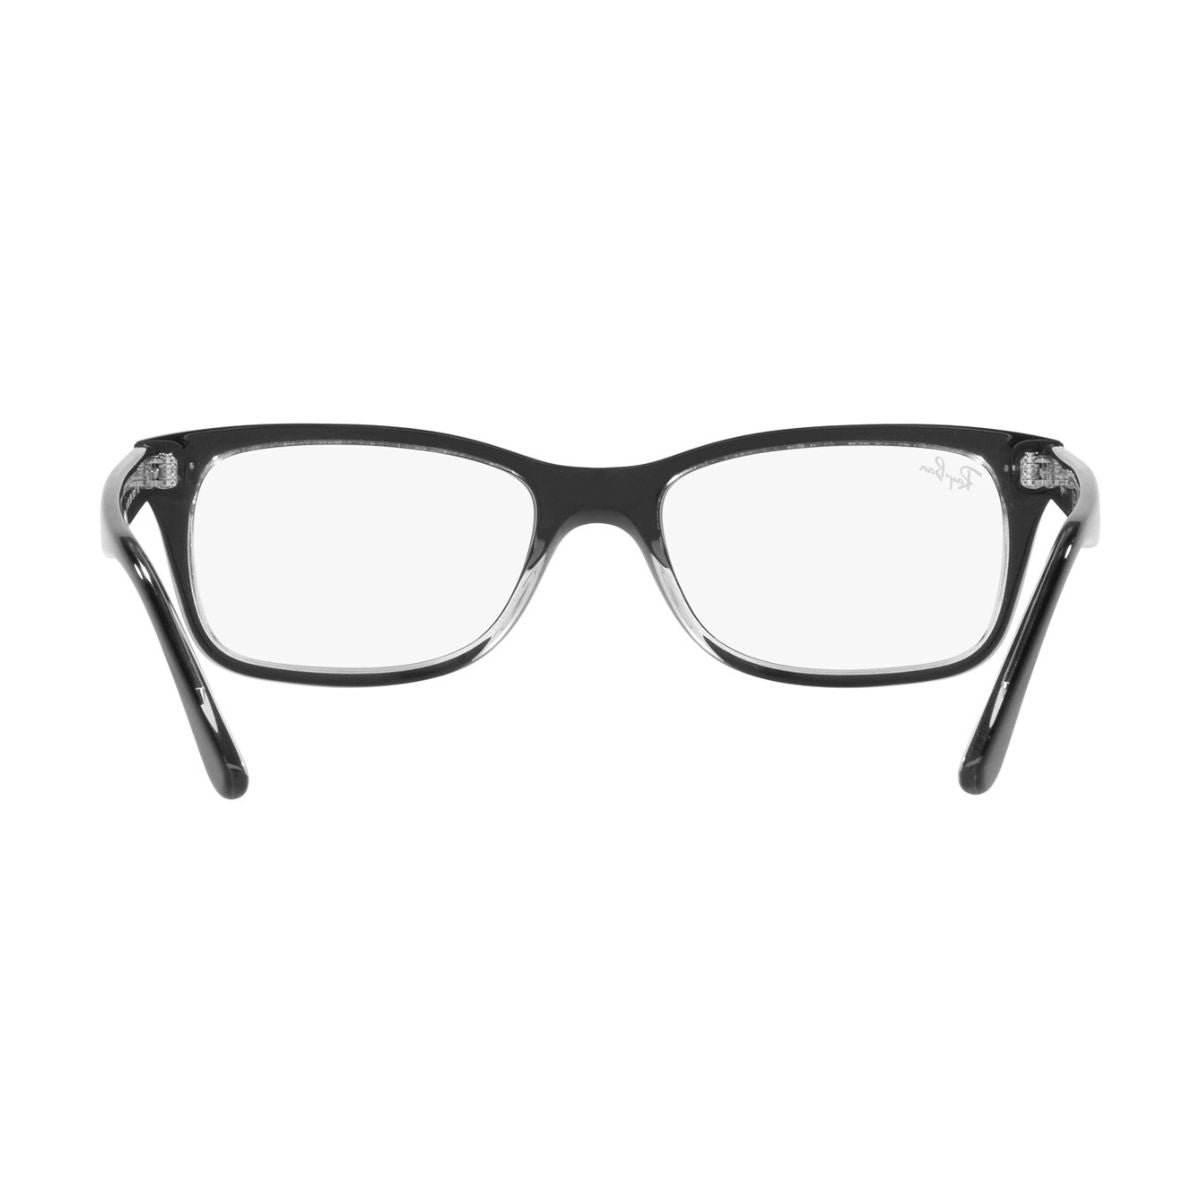 "stylish Rayban 5428 2034  trendy eyewear frame for men's at optorium"